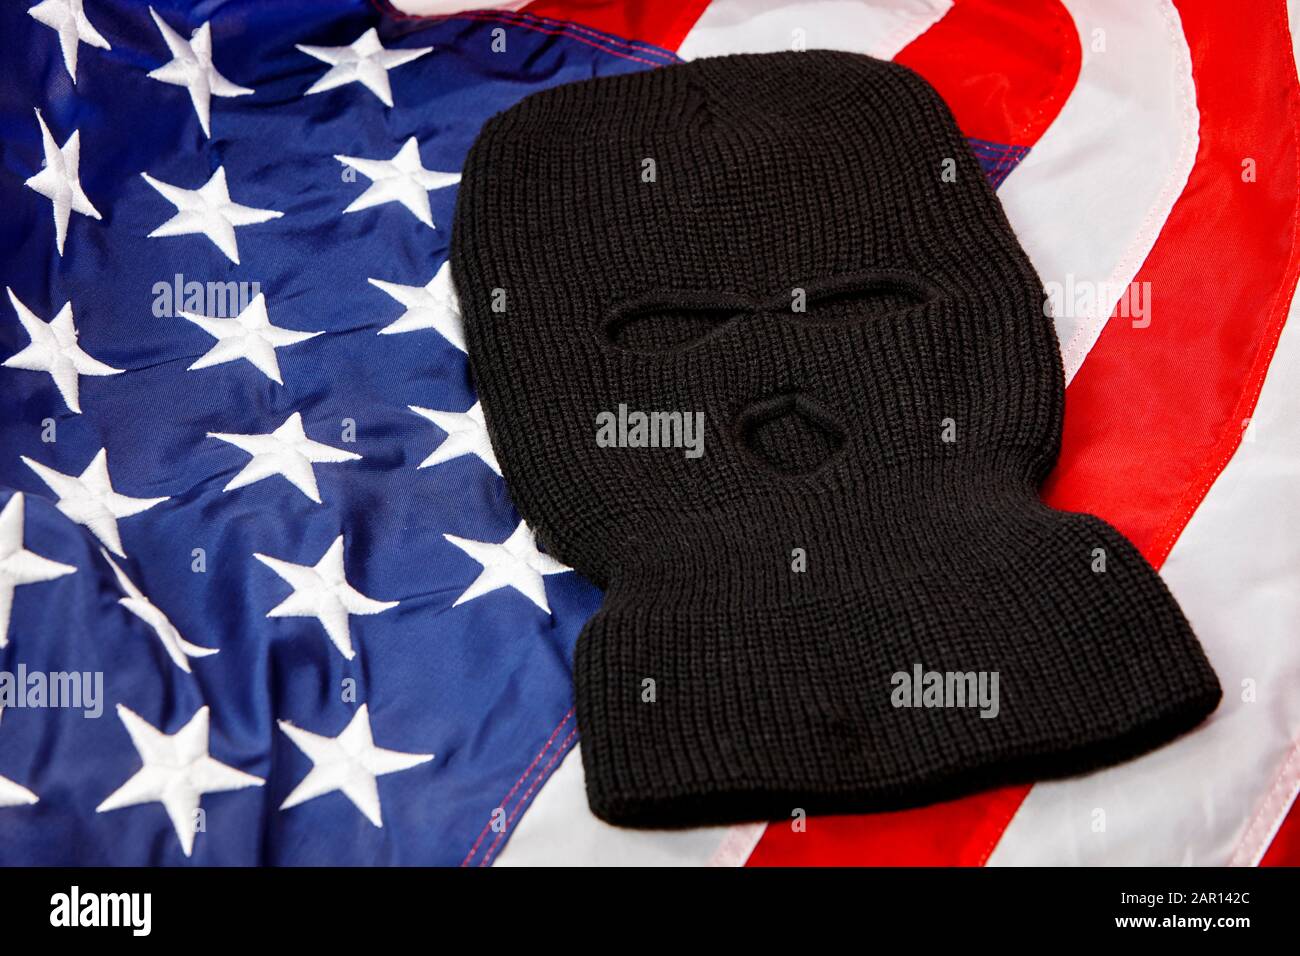 black balaclava ski mask lying on united states of america flag Stock Photo